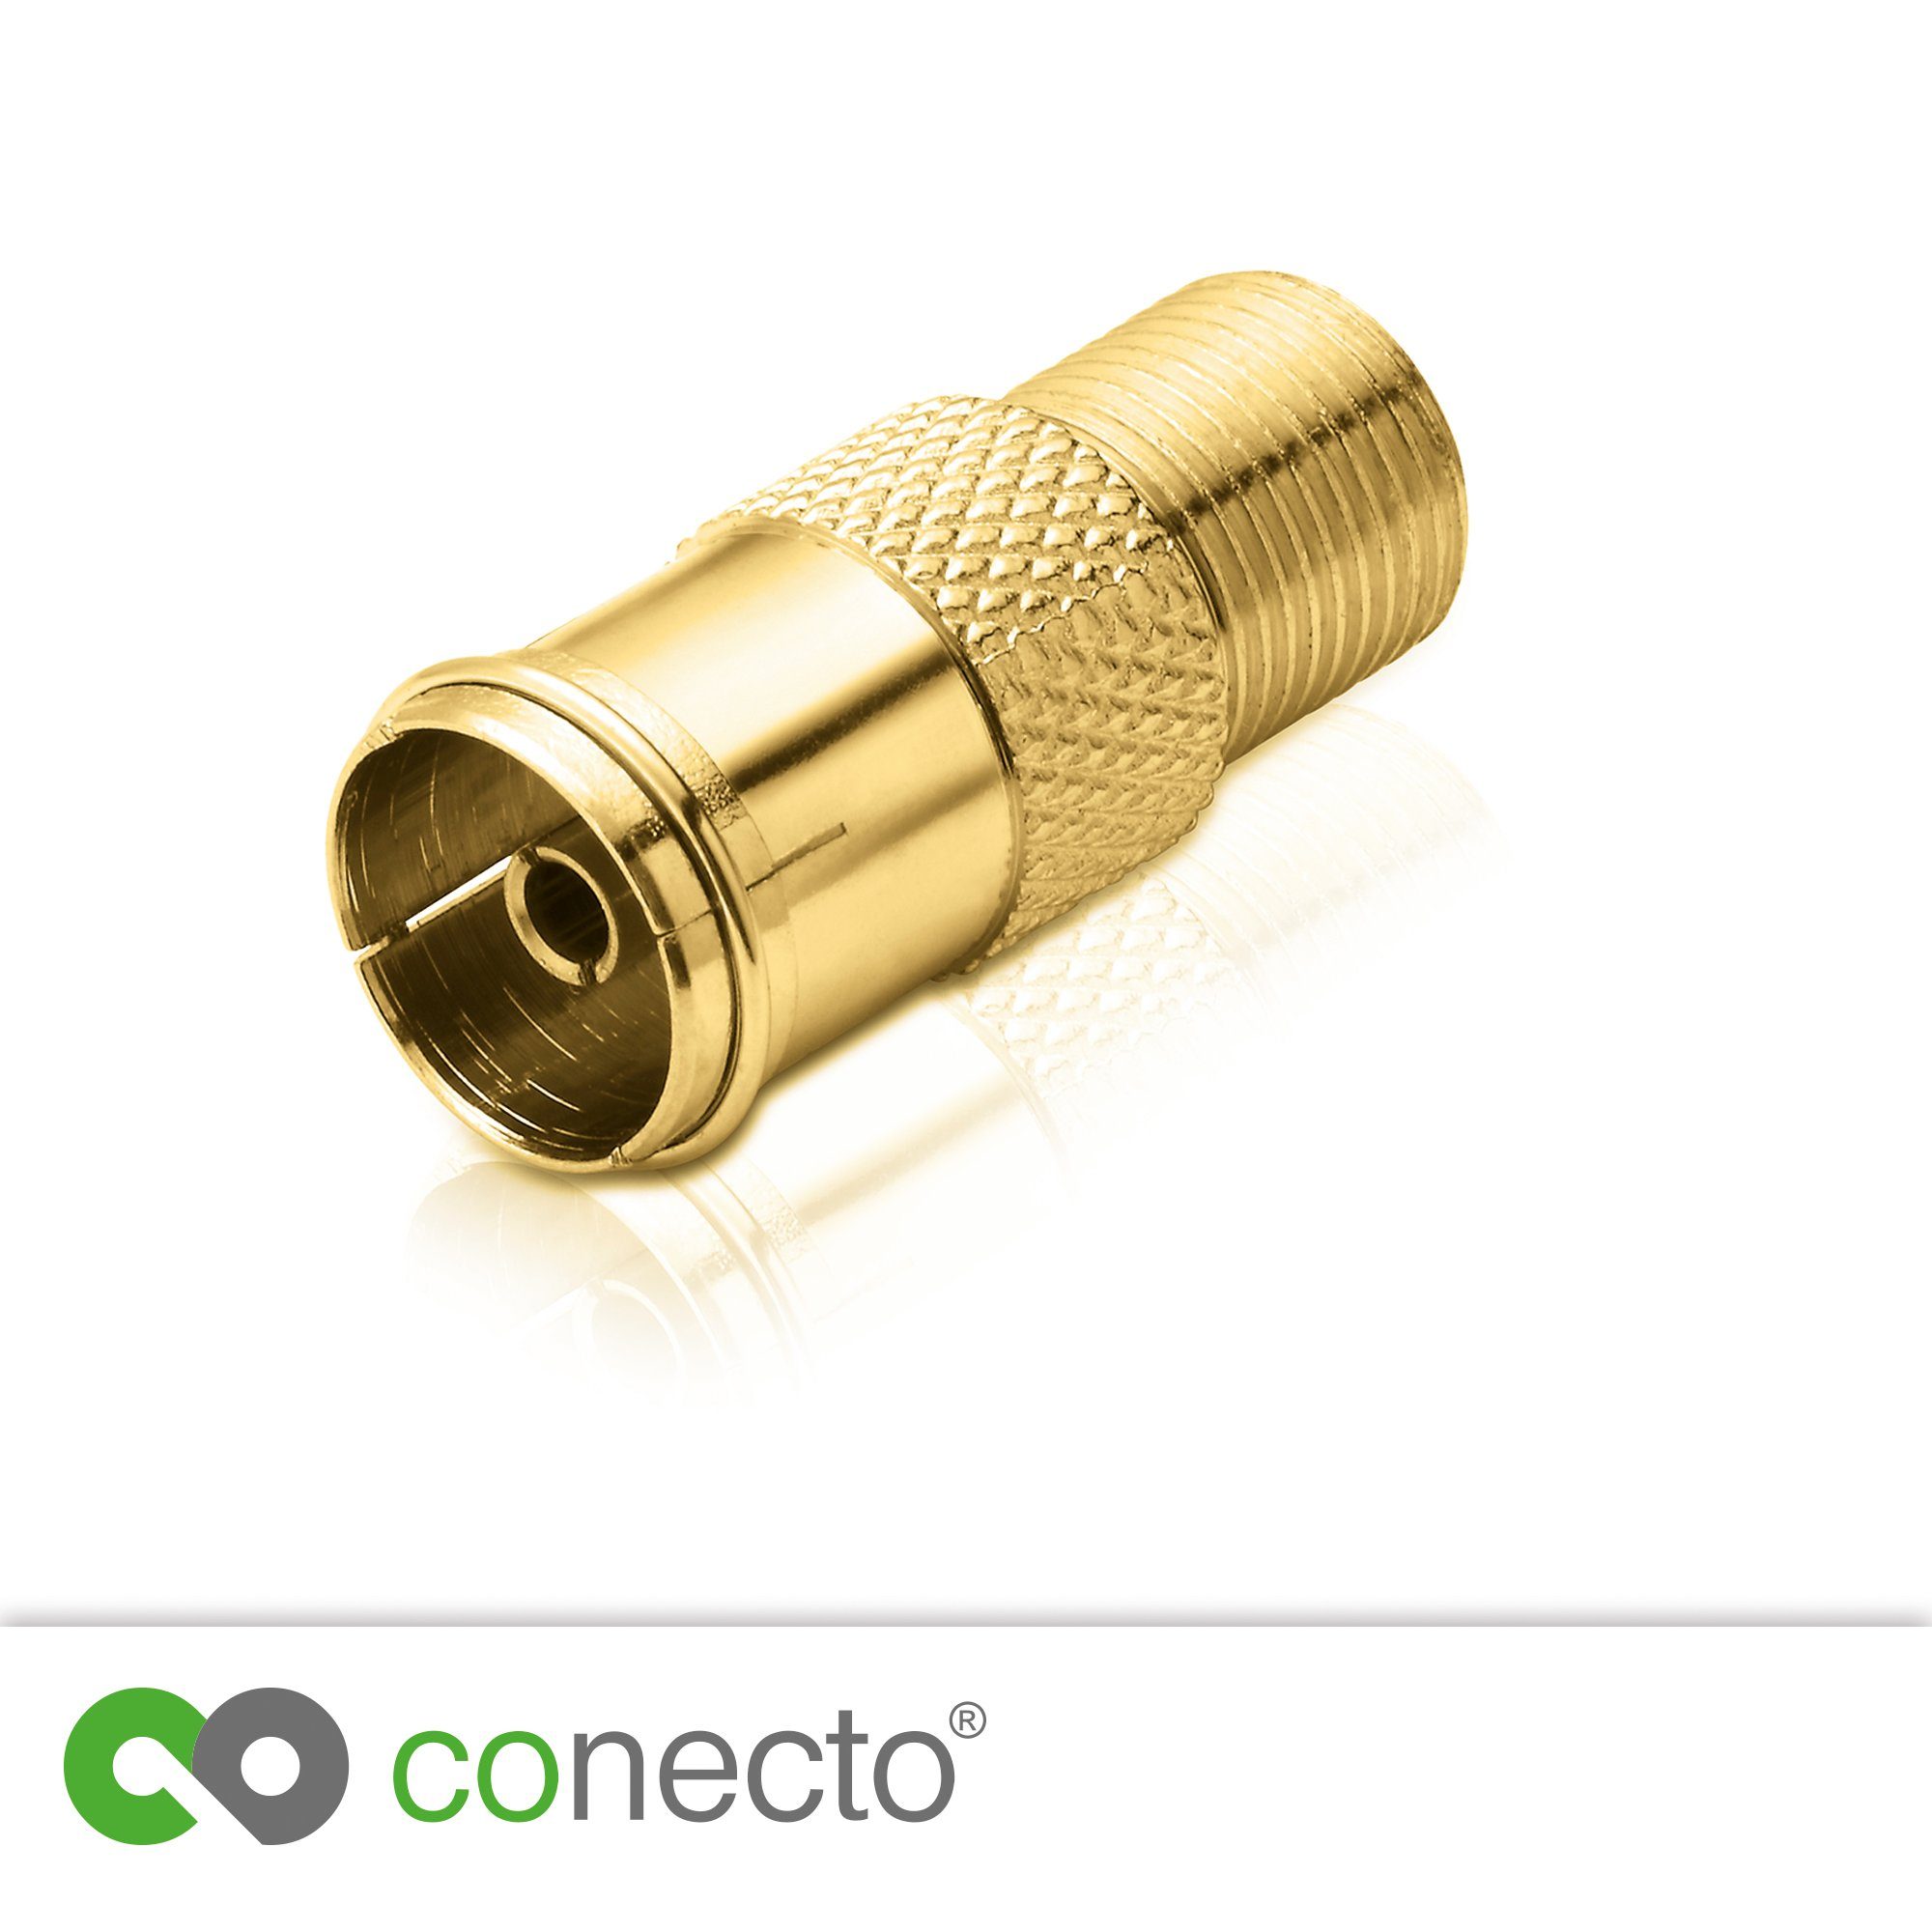 conecto conecto Antennen-Adapter, F-Buchse auf IEC-Koax-Buchse, Adapter zum SAT-Kabel